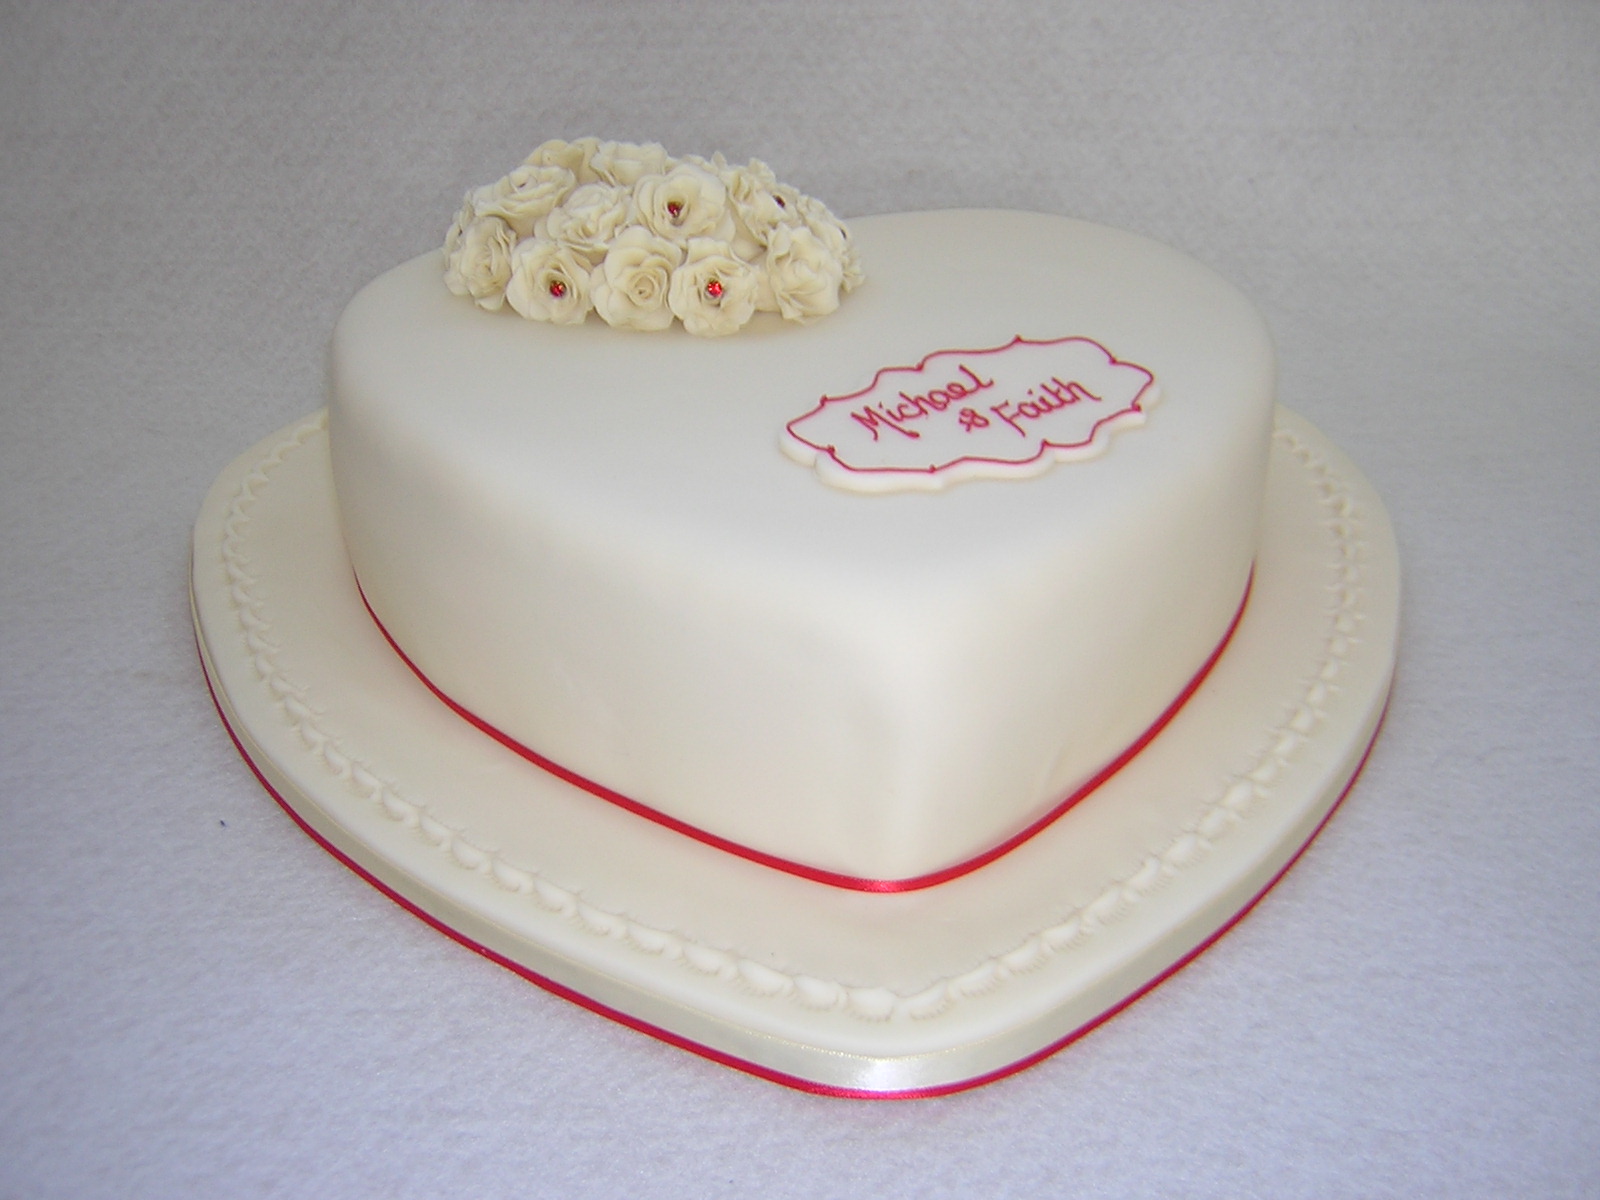 Heart shaped white icing anniversary cake